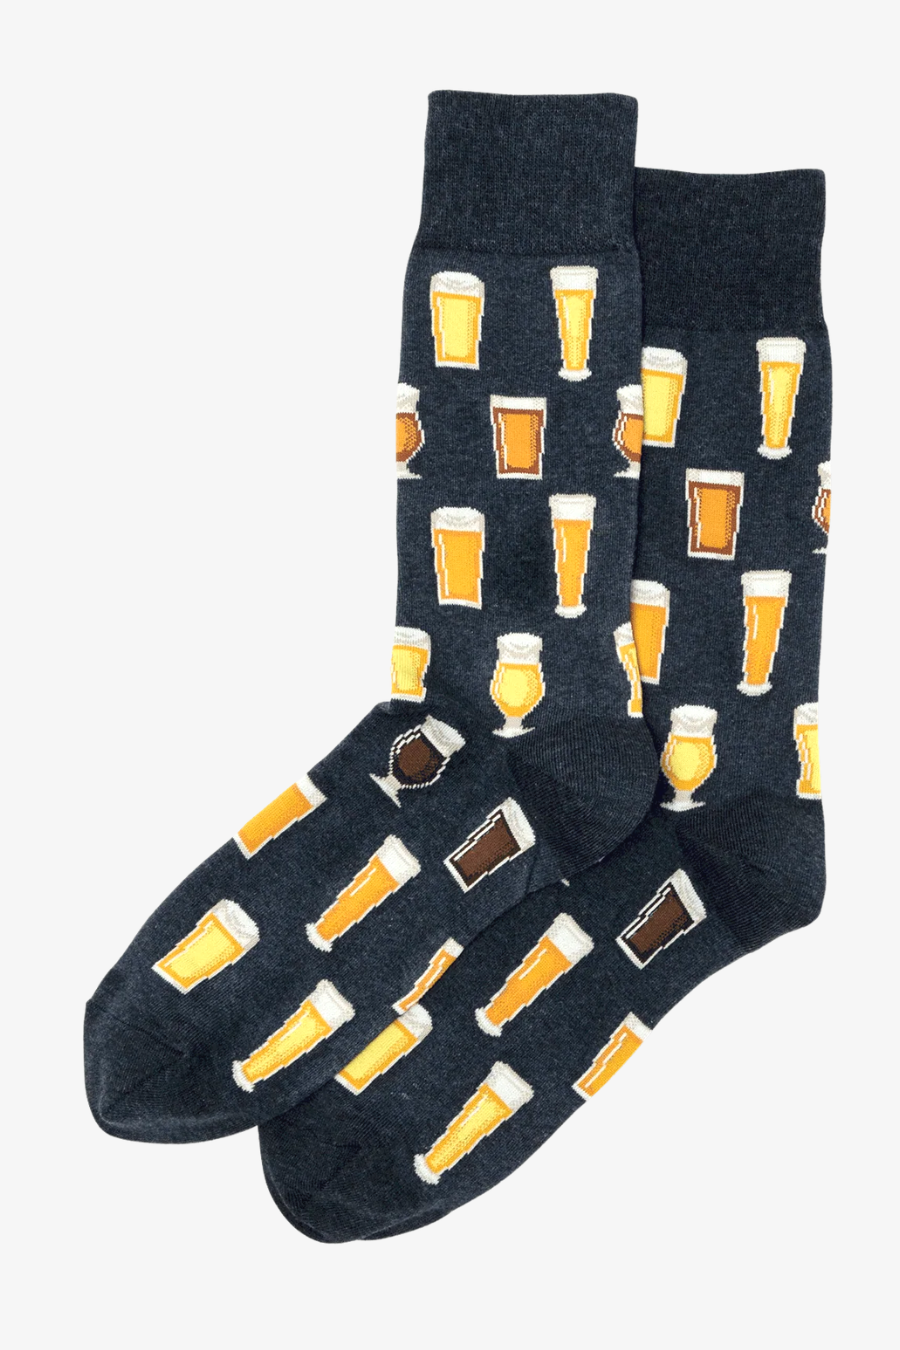 Mens Beer Socks